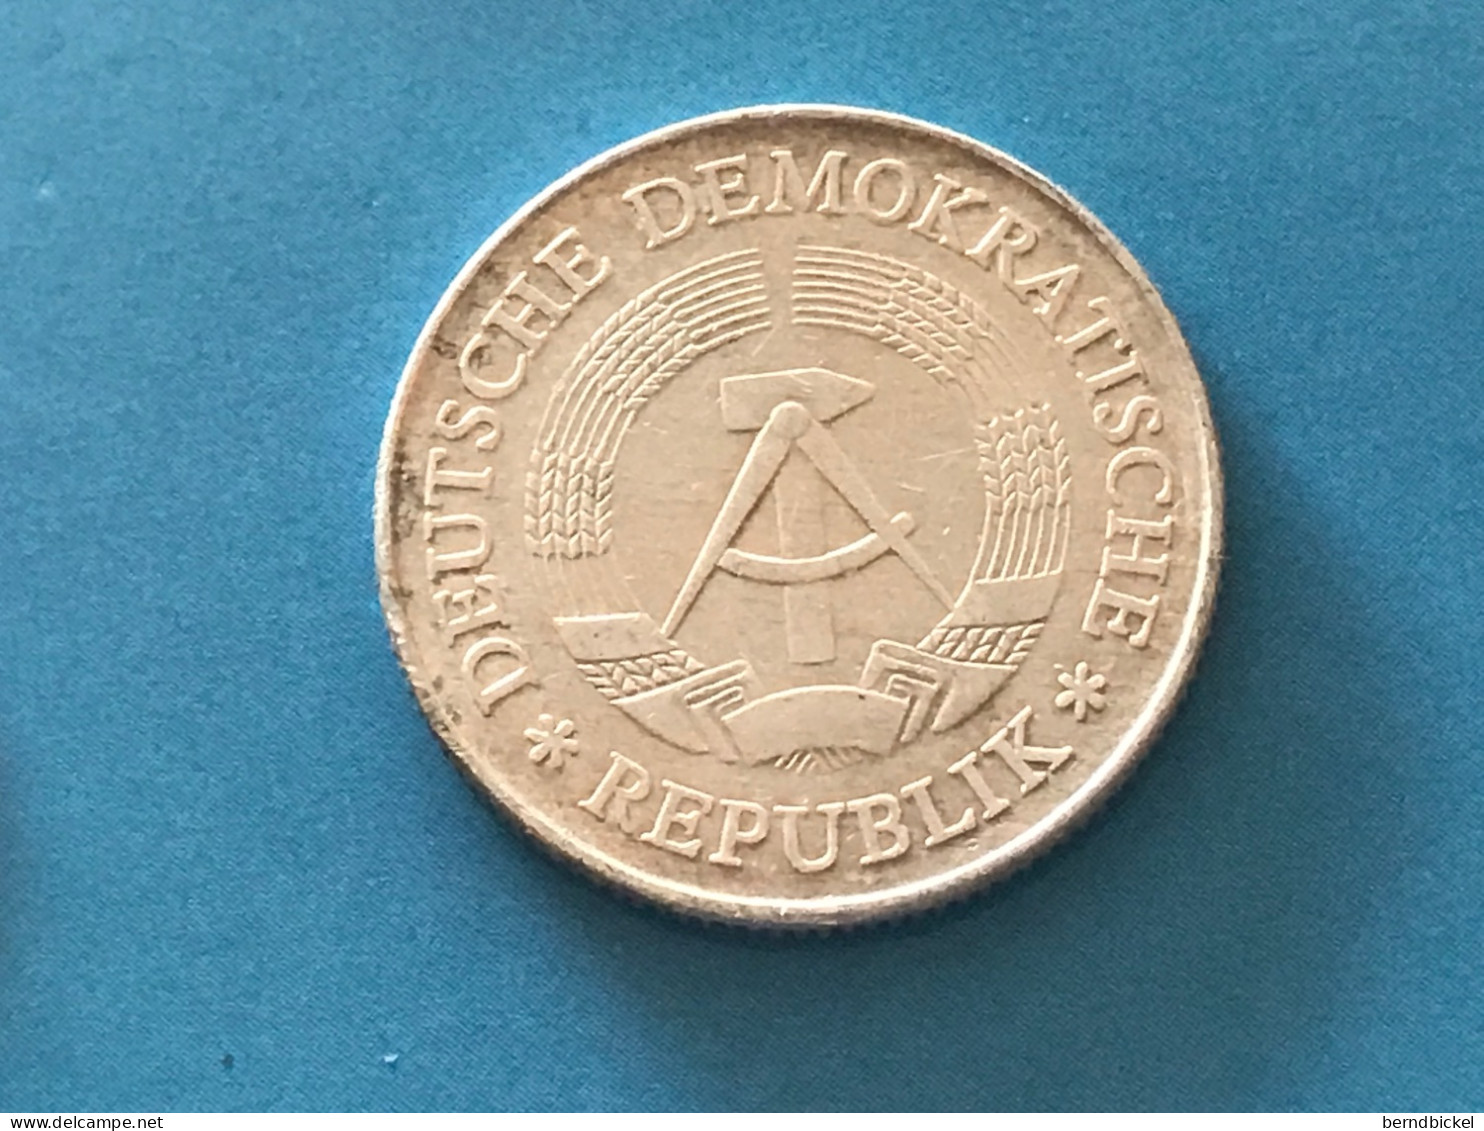 Münze Münzen Umlaufmünze Deutschland DDR 2 Mark 1977 - 2 Marcos